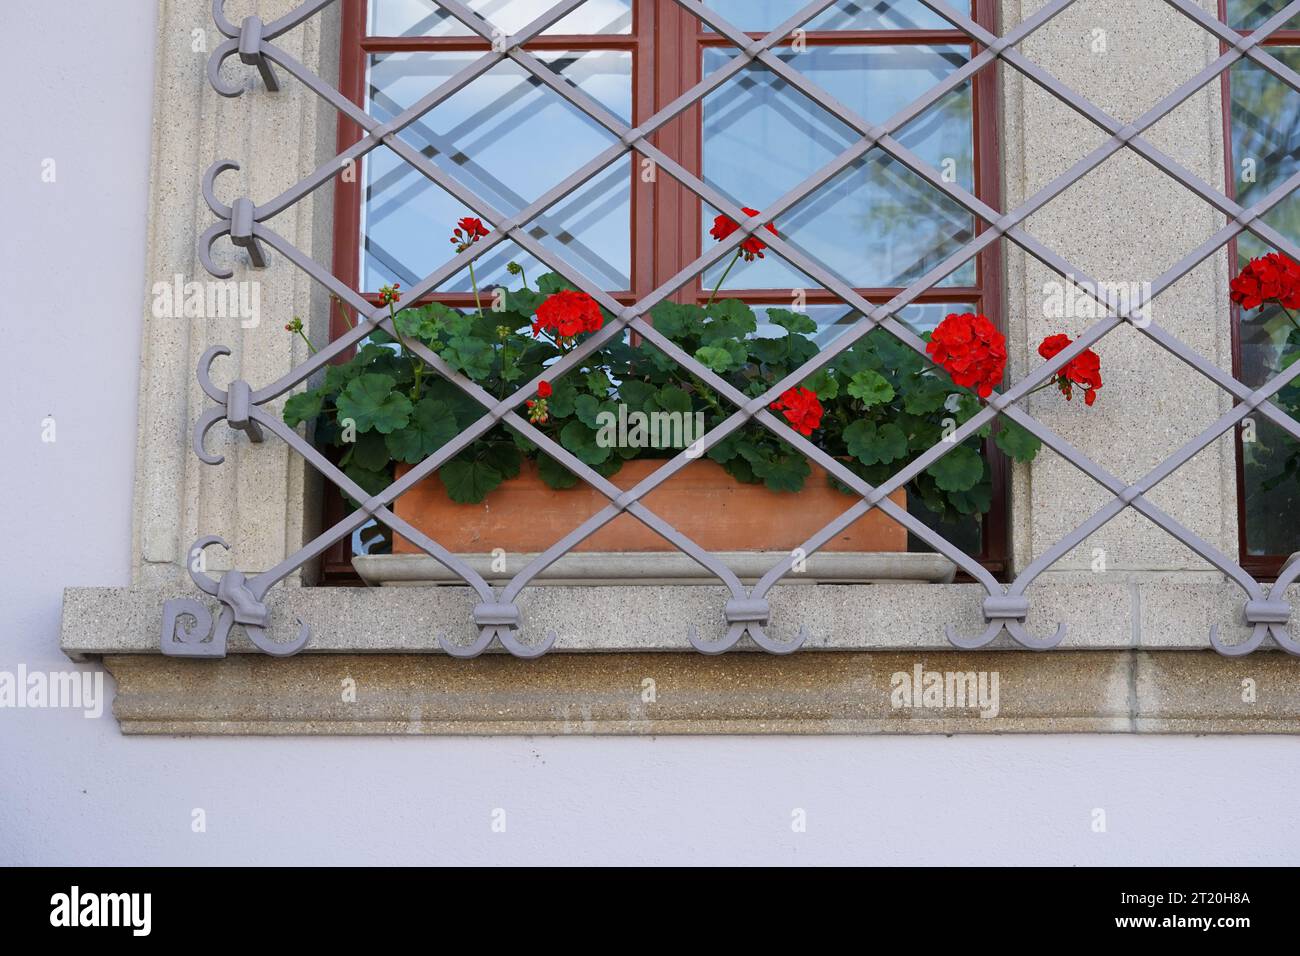 Plantes de géranium avec des fleurs rouges placées dans un pot de fleur rectangulaire en terre cuite sur un rebord de fenêtre. Toute la fenêtre est protégée par une grille métallique. Banque D'Images